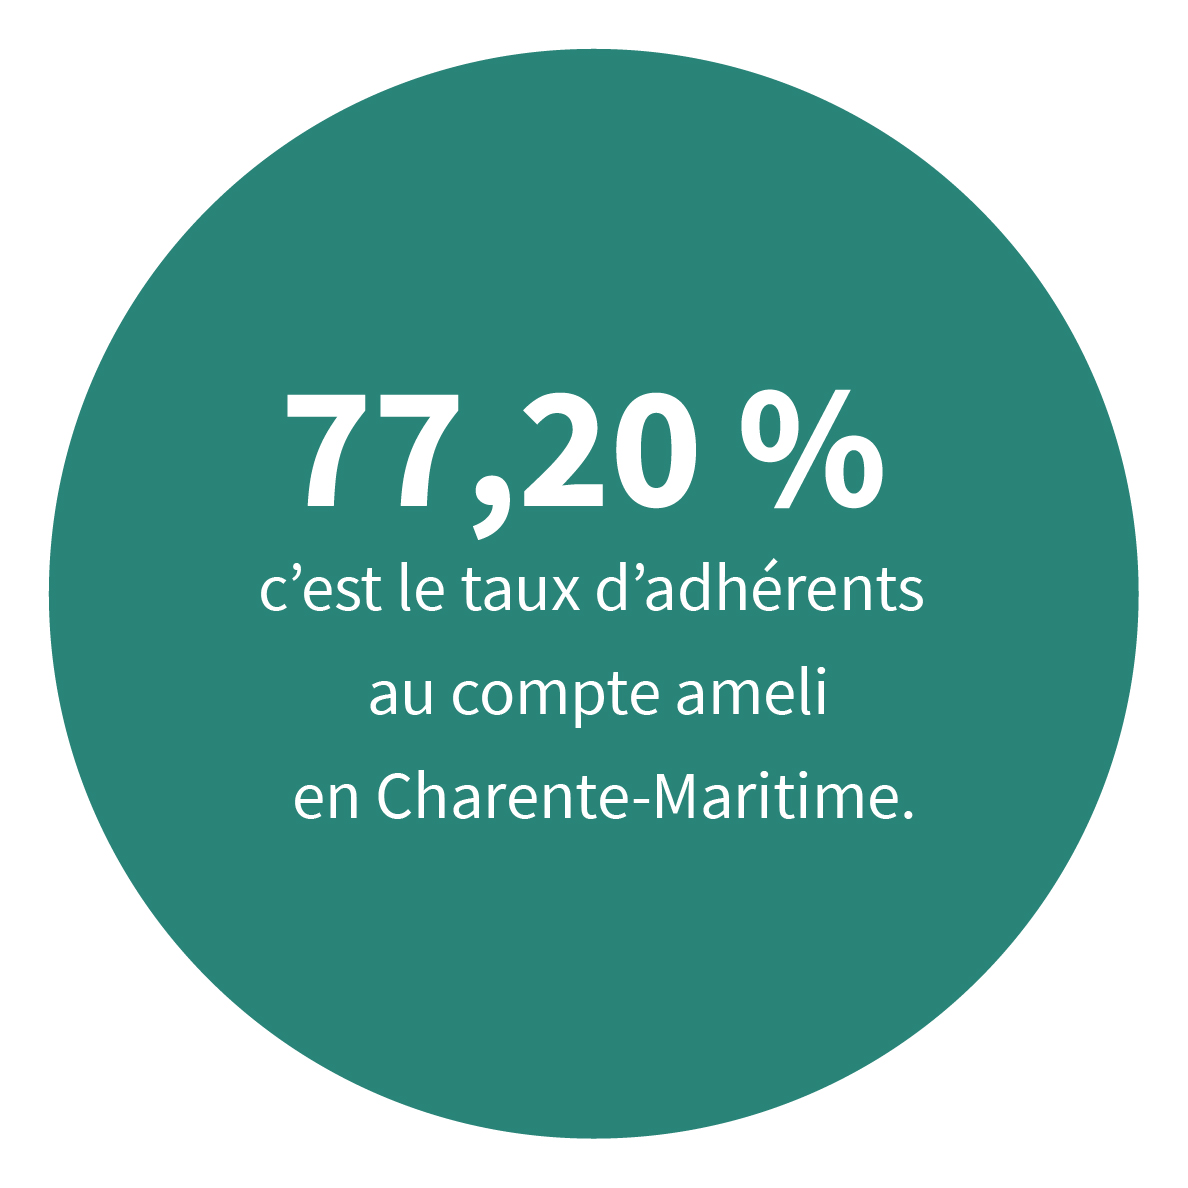 77,20 % c’est le taux d’adhérents au compte ameli en Charente-Maritime.